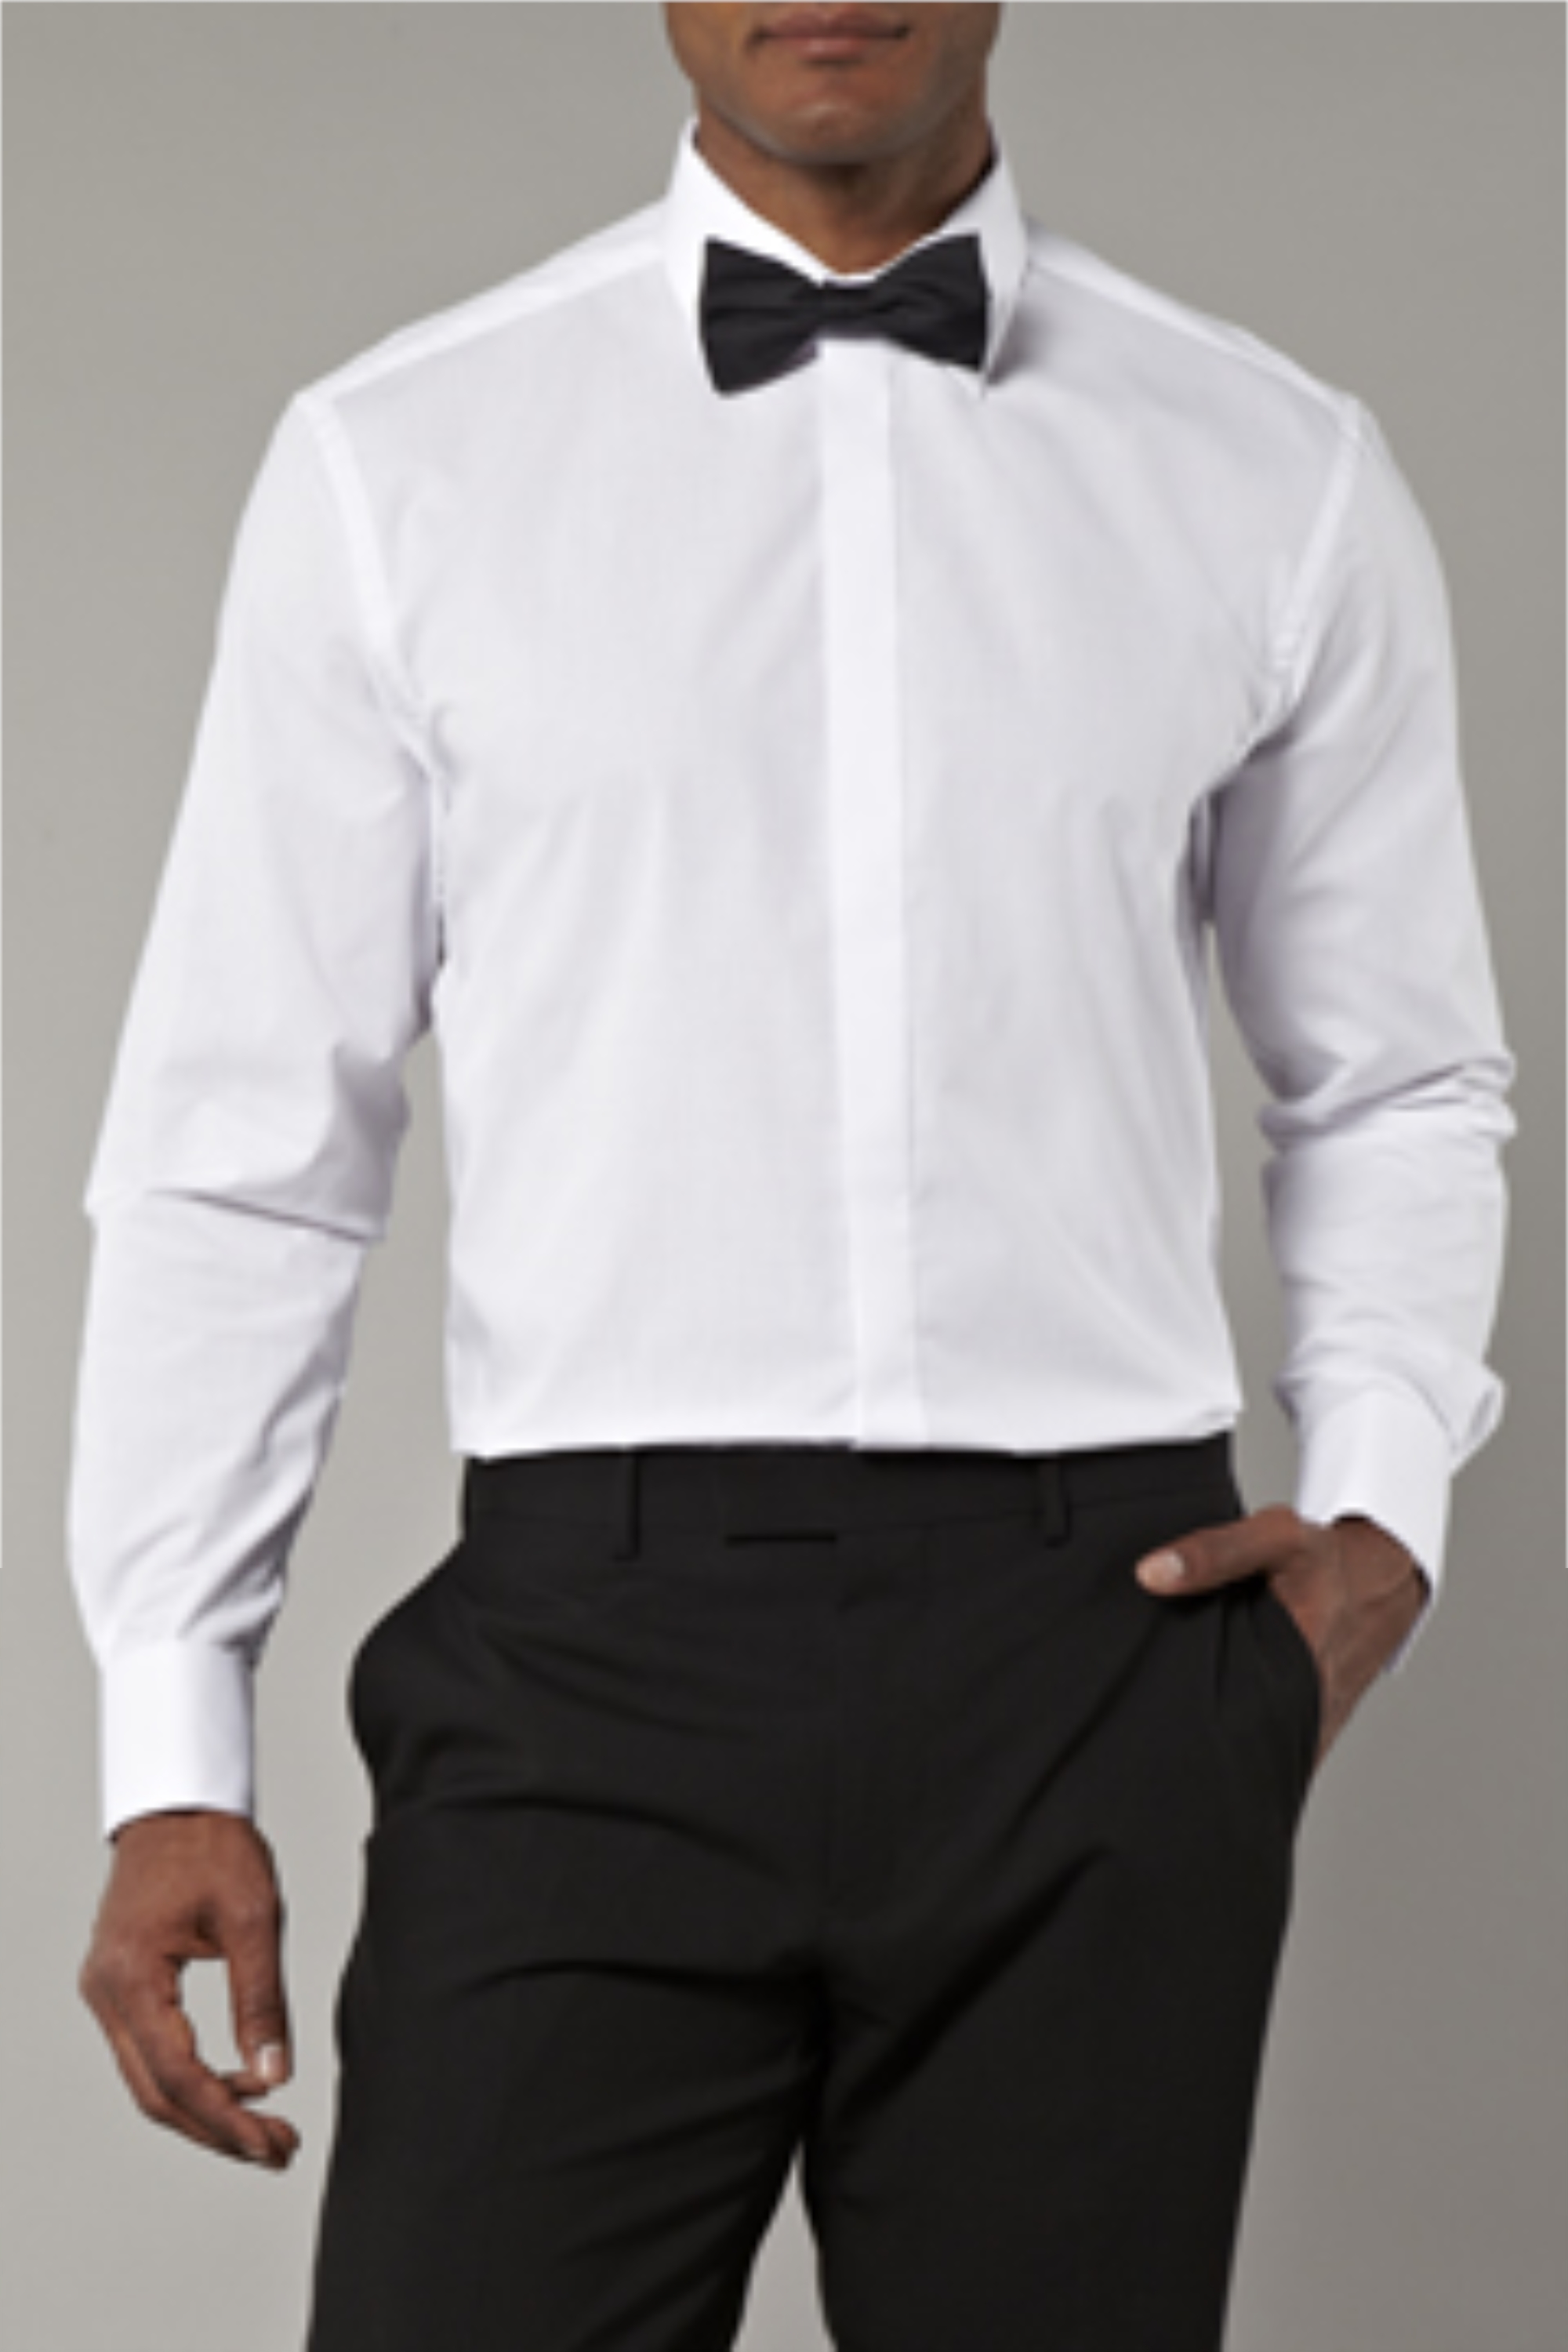 Moss Bros Plain Normal Collar Dress Shirt | Buy Online at Moss